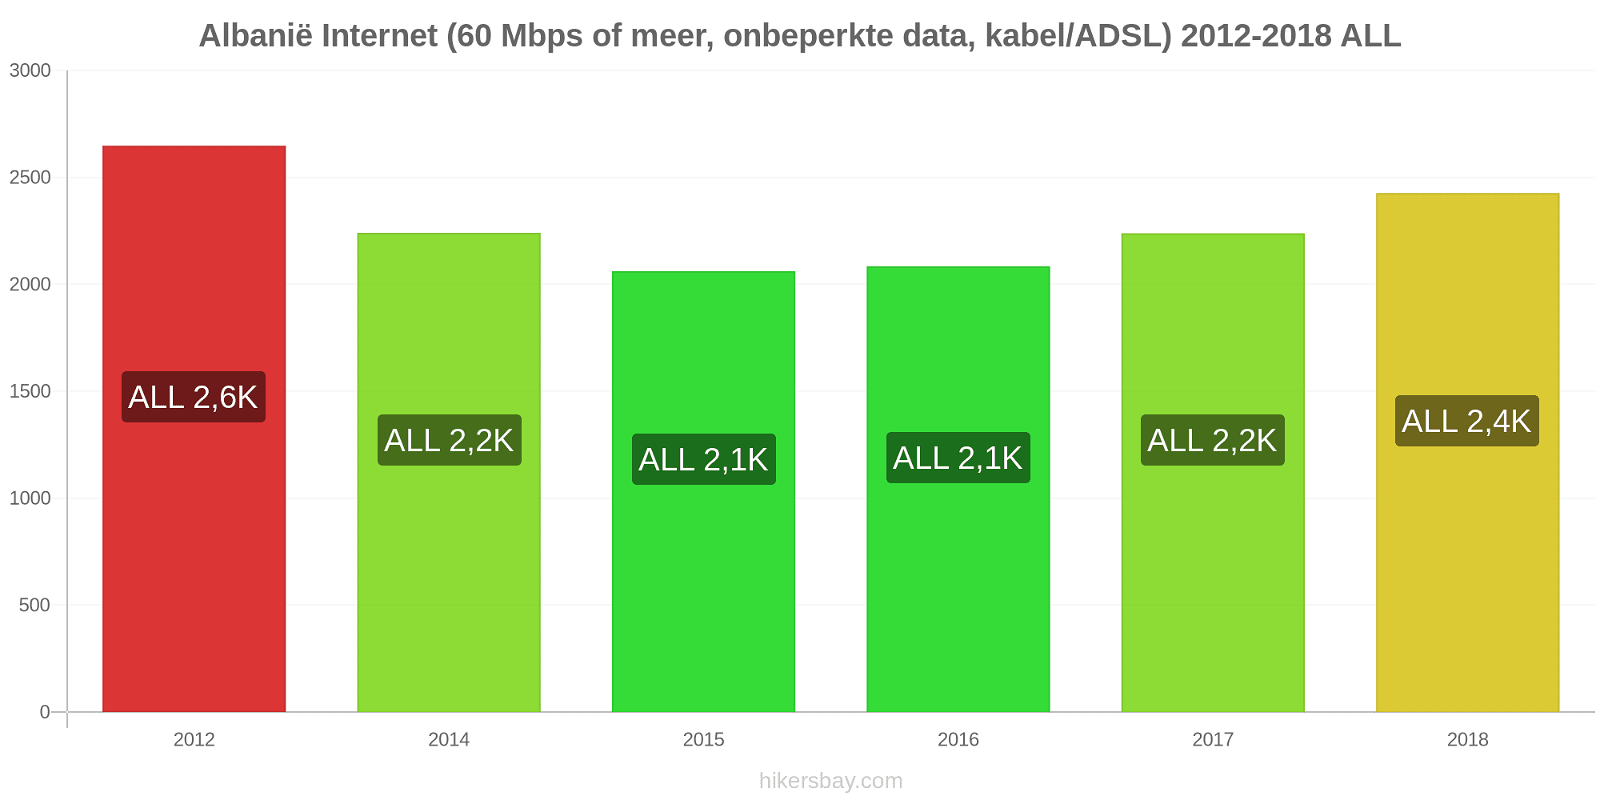 Albanië prijswijzigingen Internet (60 Mbps of meer, Onbeperkte Data, Kabel/ADSL) hikersbay.com